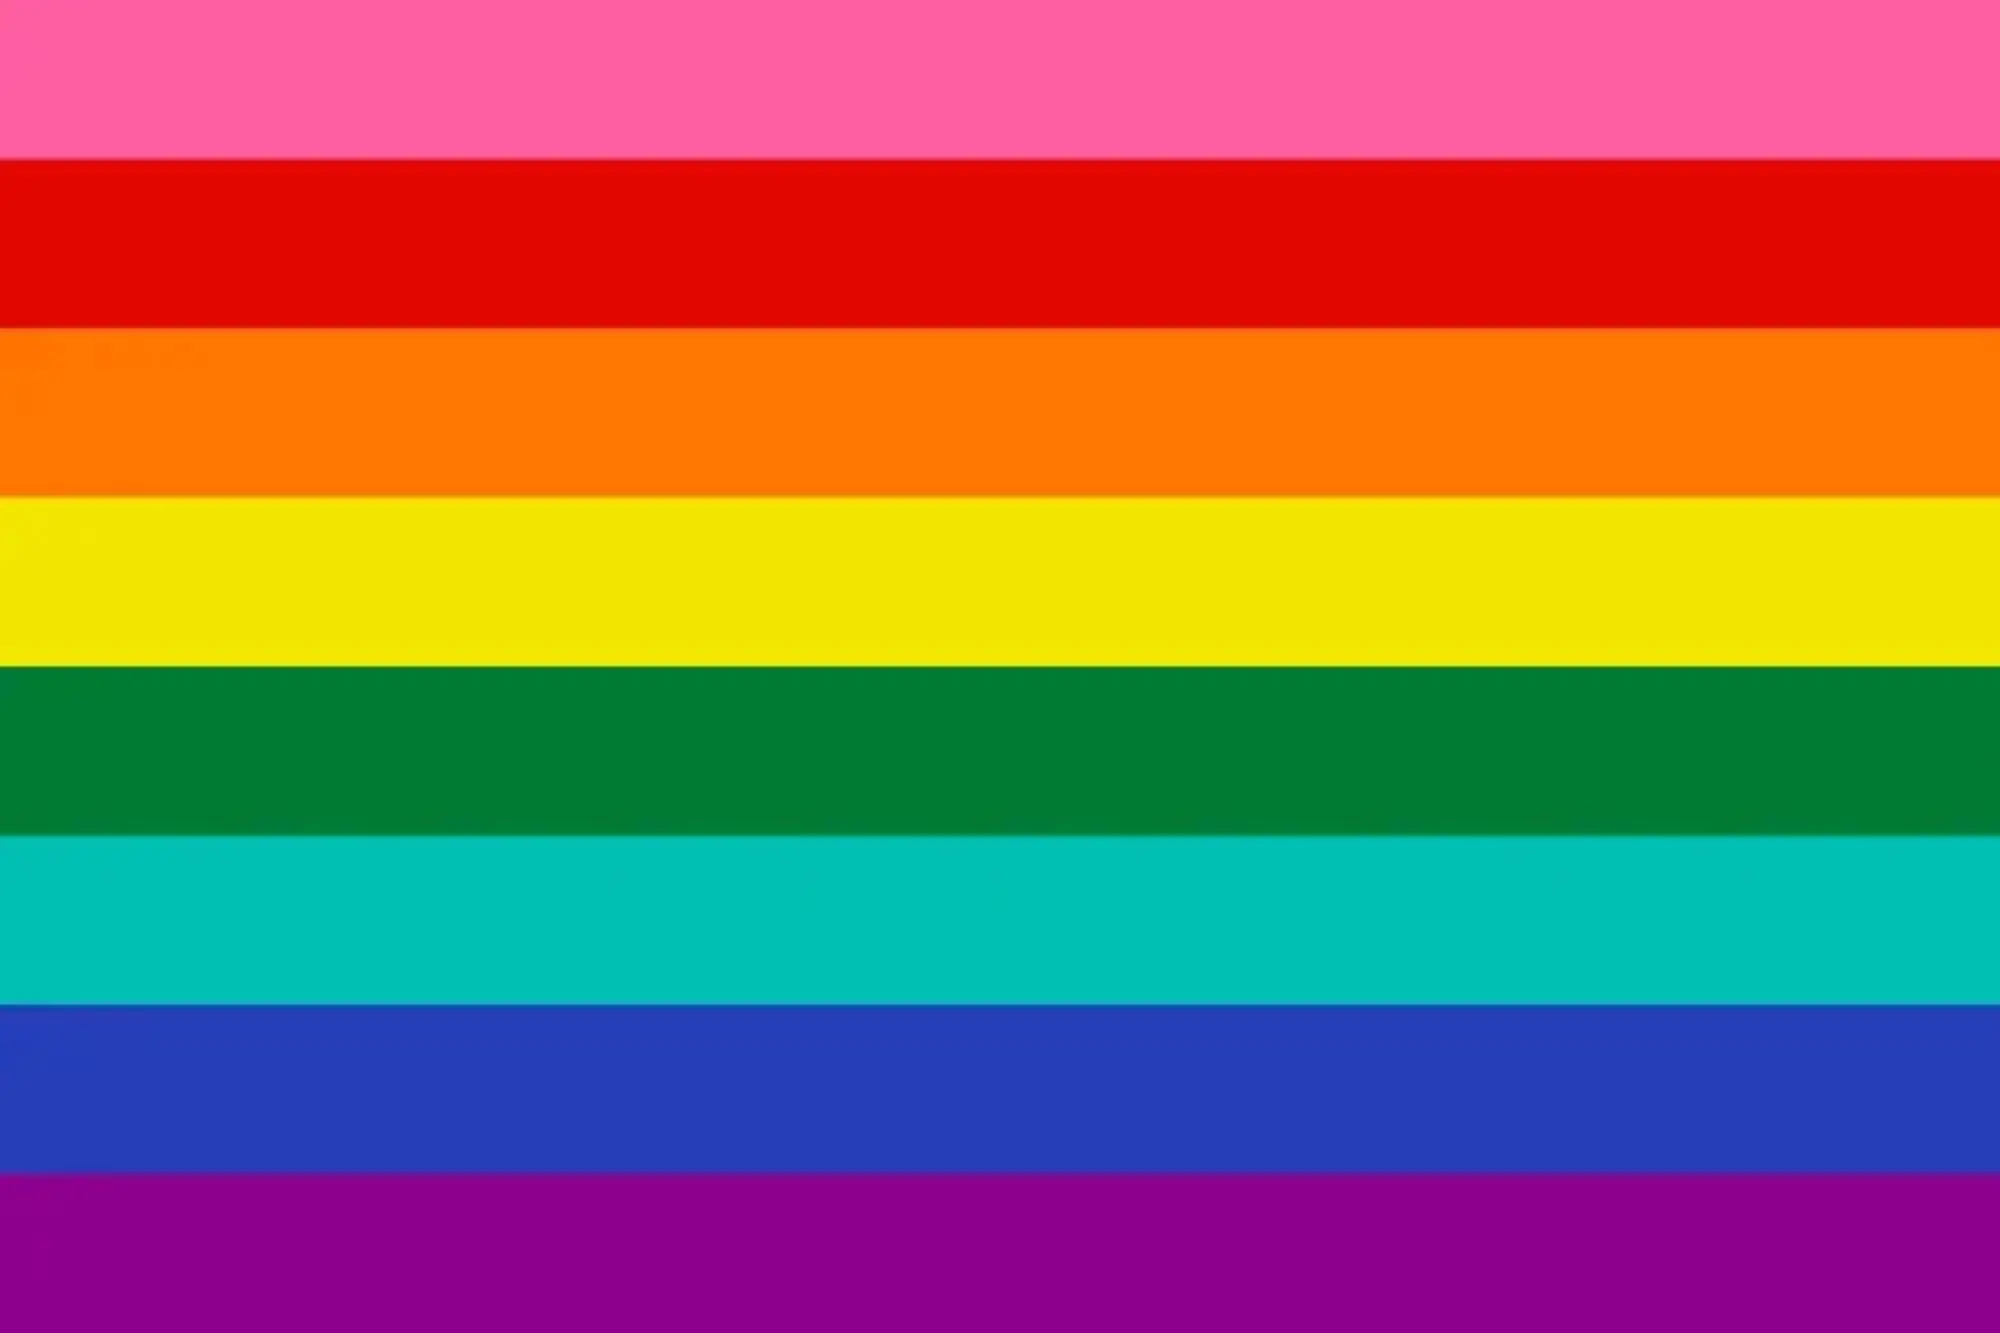 艺术家贝克创作的原创八条纹彩虹骄傲旗。（来源：Pantone）